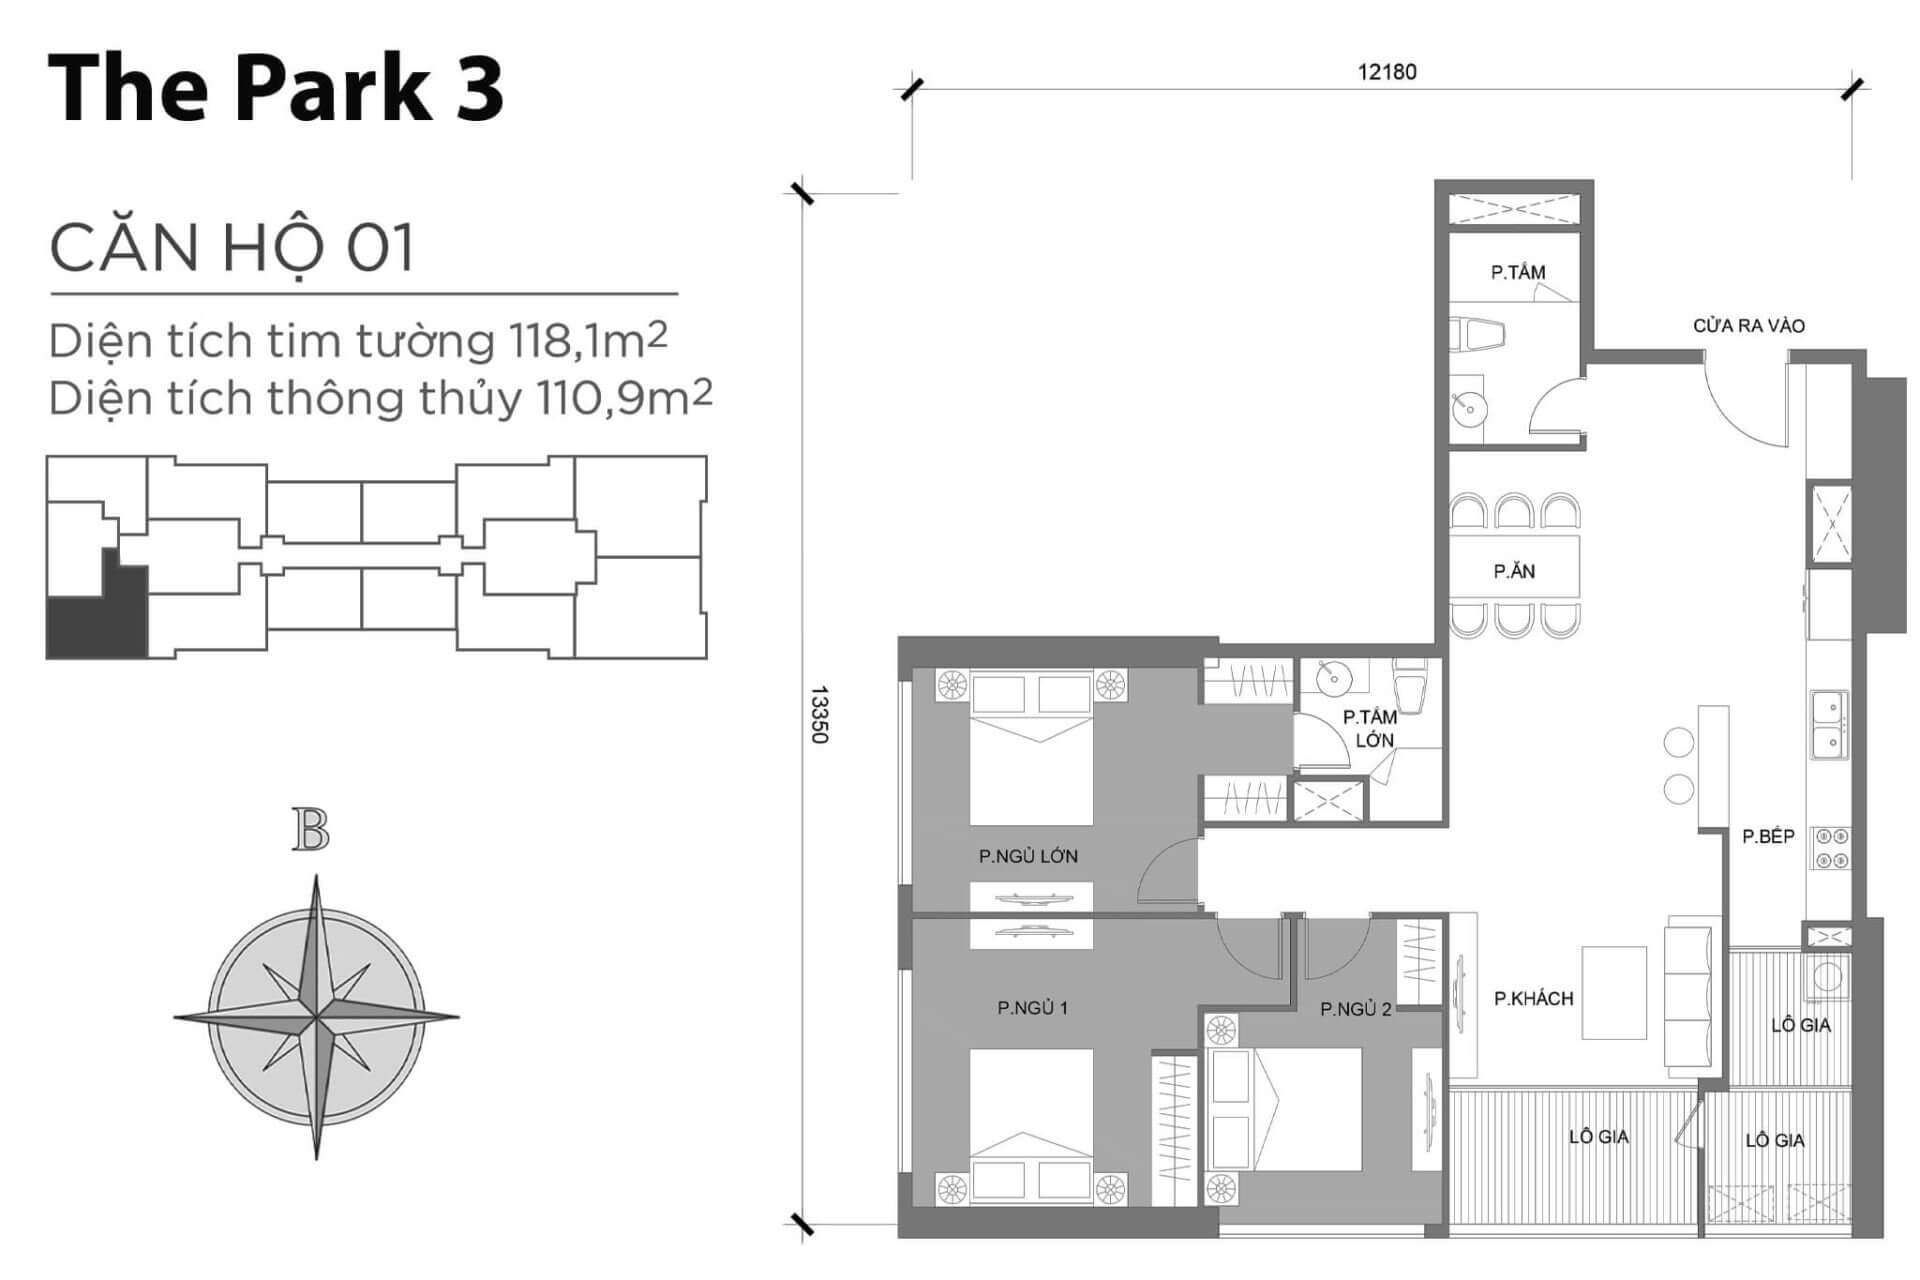 mặt bằng layout căn hộ số 01 Park 3 Vinhomes Central Park